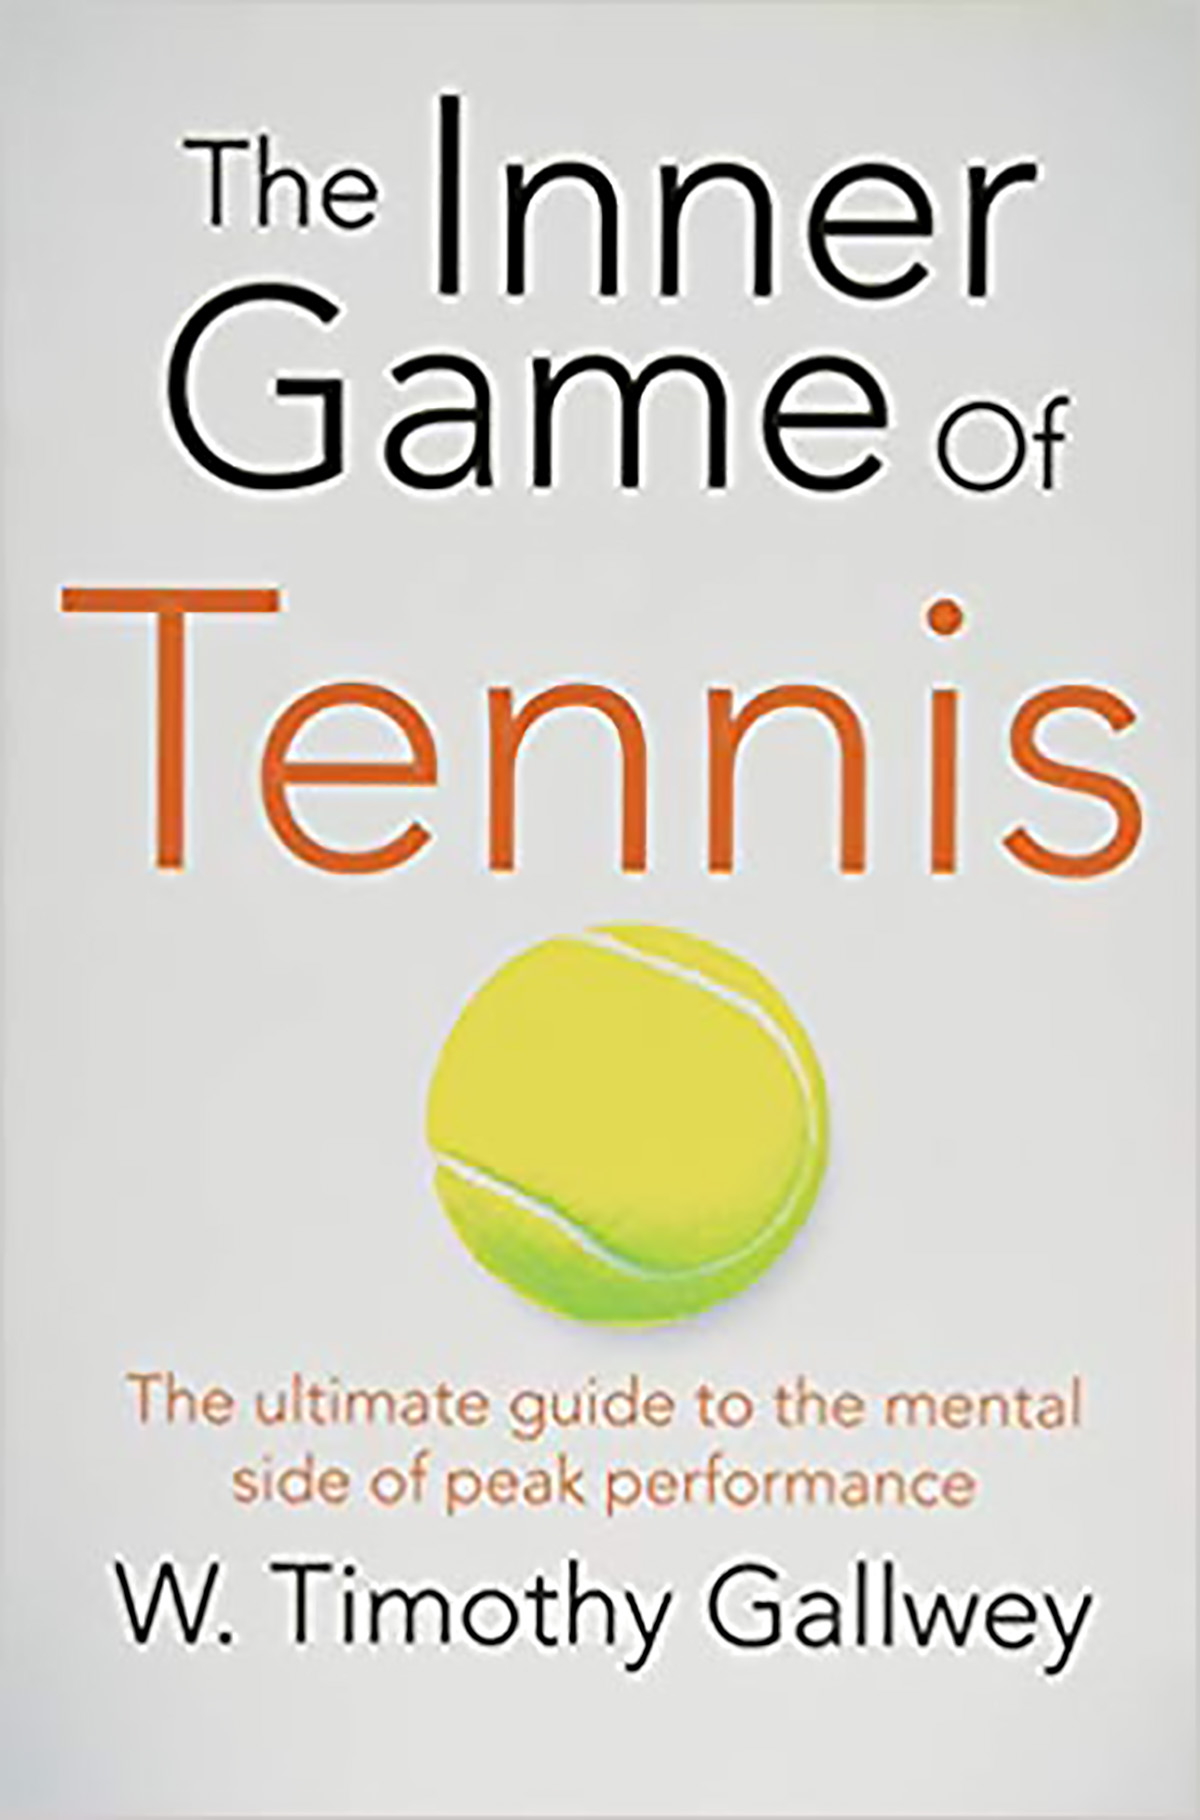 The inner game of tennis di Timothy W. Gallwey   (in italiano “Il gioco interiore nel tennis”) - ed. Ultra 2013